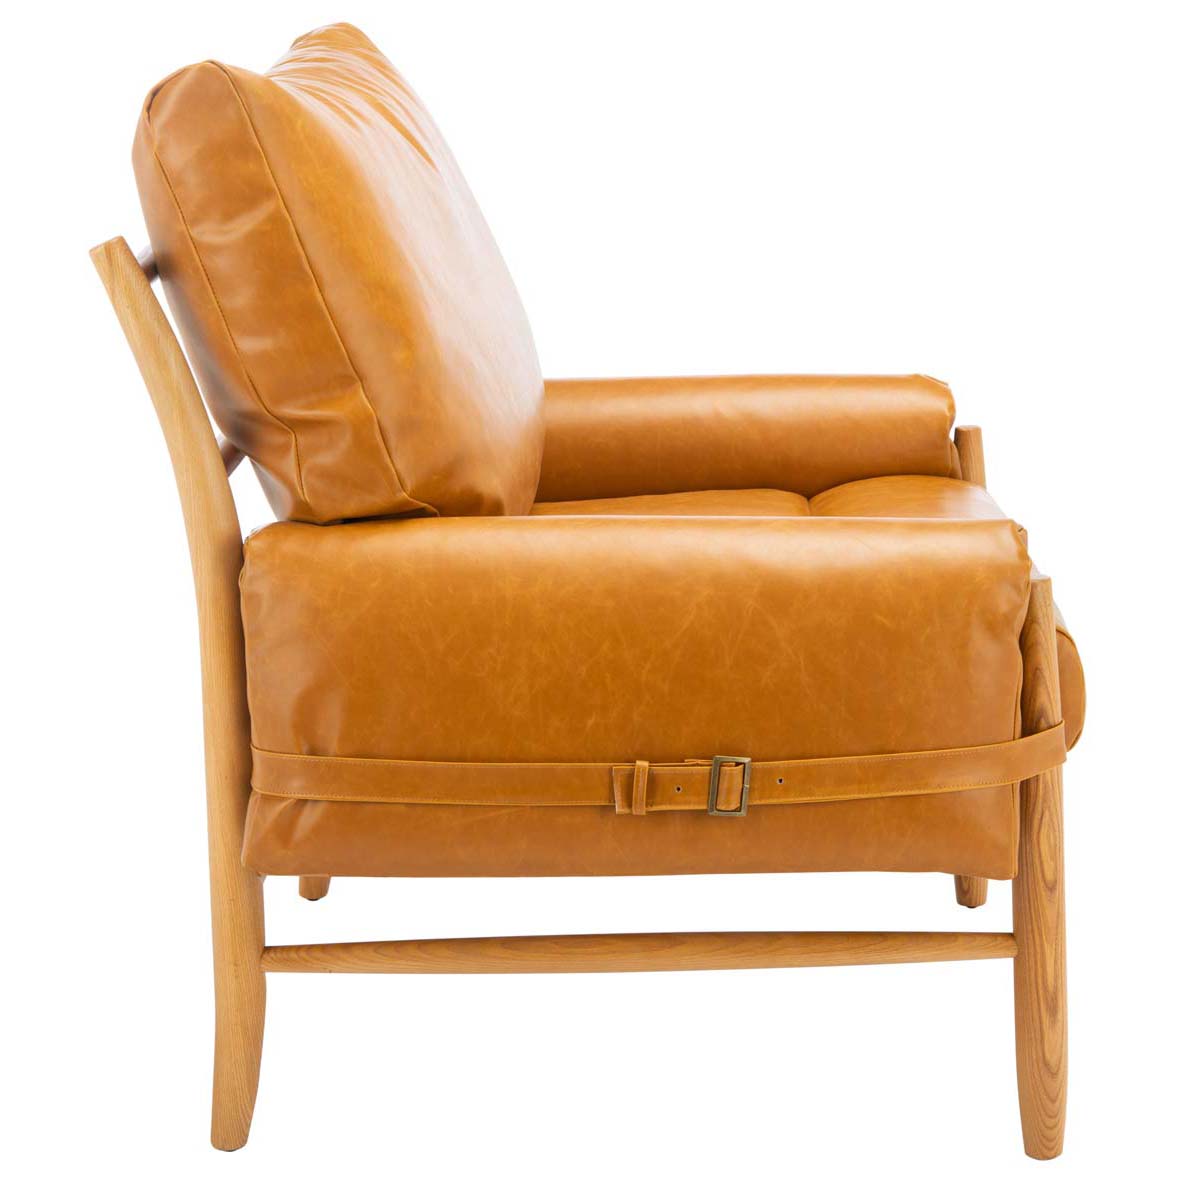 Safavieh Oslo Mid Century Arm Chair, ACH4509